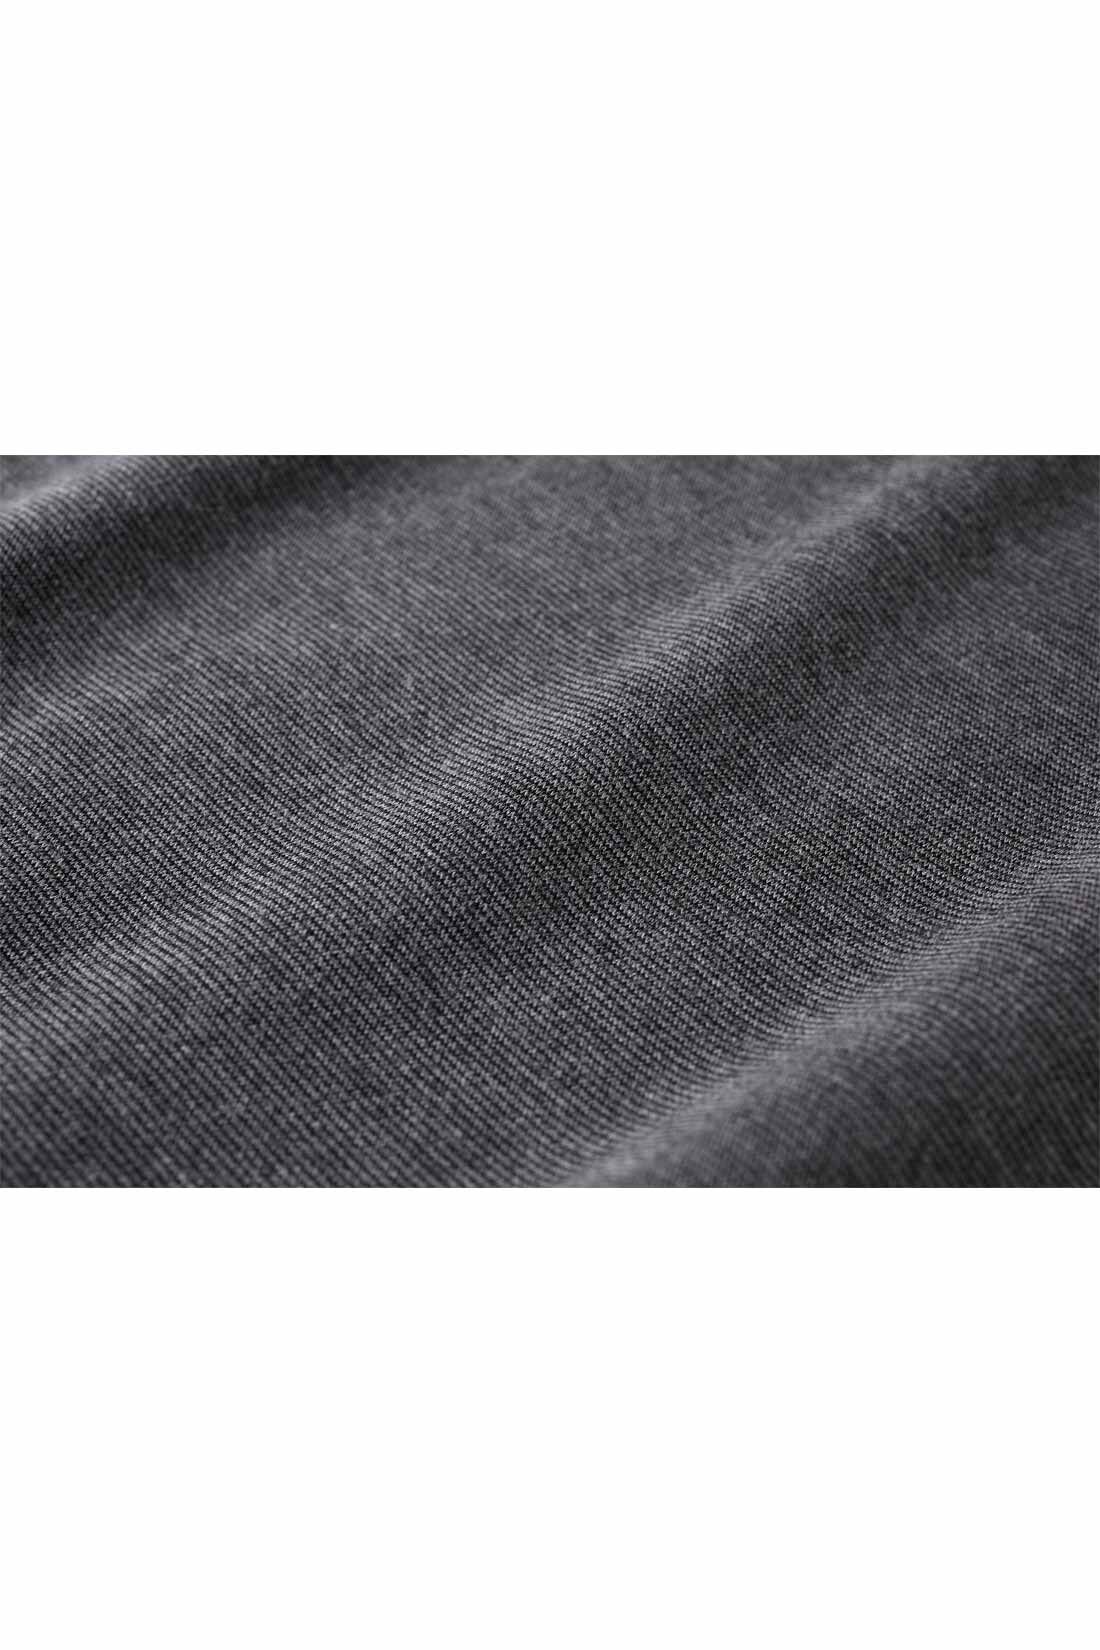 イディット|IEDIT[イディット] 前後2‐WAYで着られる Aラインカットソーワンピース〈ブラック〉|ほどよい厚みときれいな表面感が高見えするリッチ感のある素材。